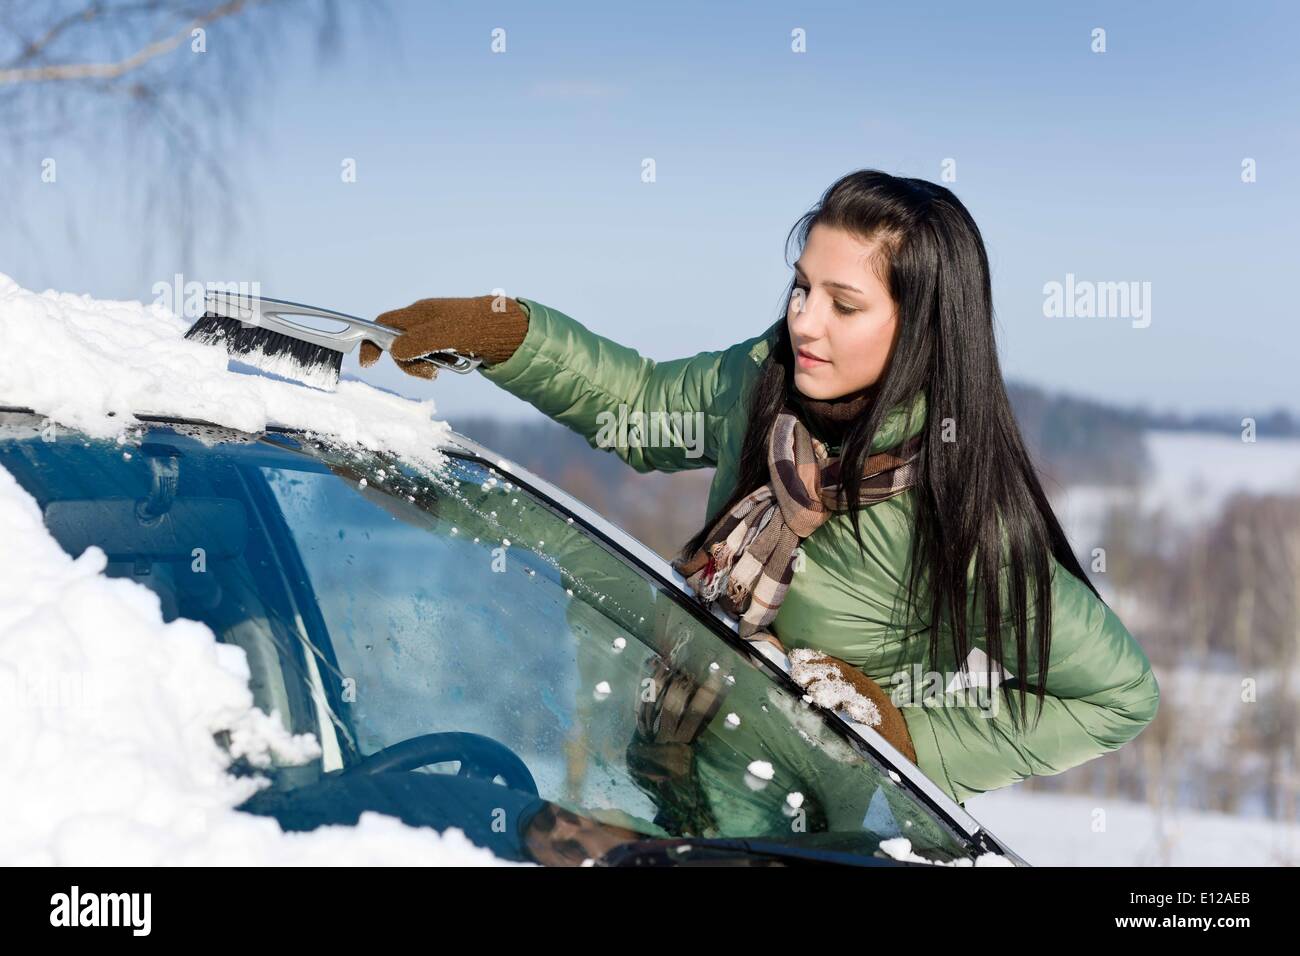 Dic. 02, 2010 - Dicembre 2, 2010 - Inverno - in auto - donna rimuovere la neve da parabrezza con spazzola di neve Foto Stock